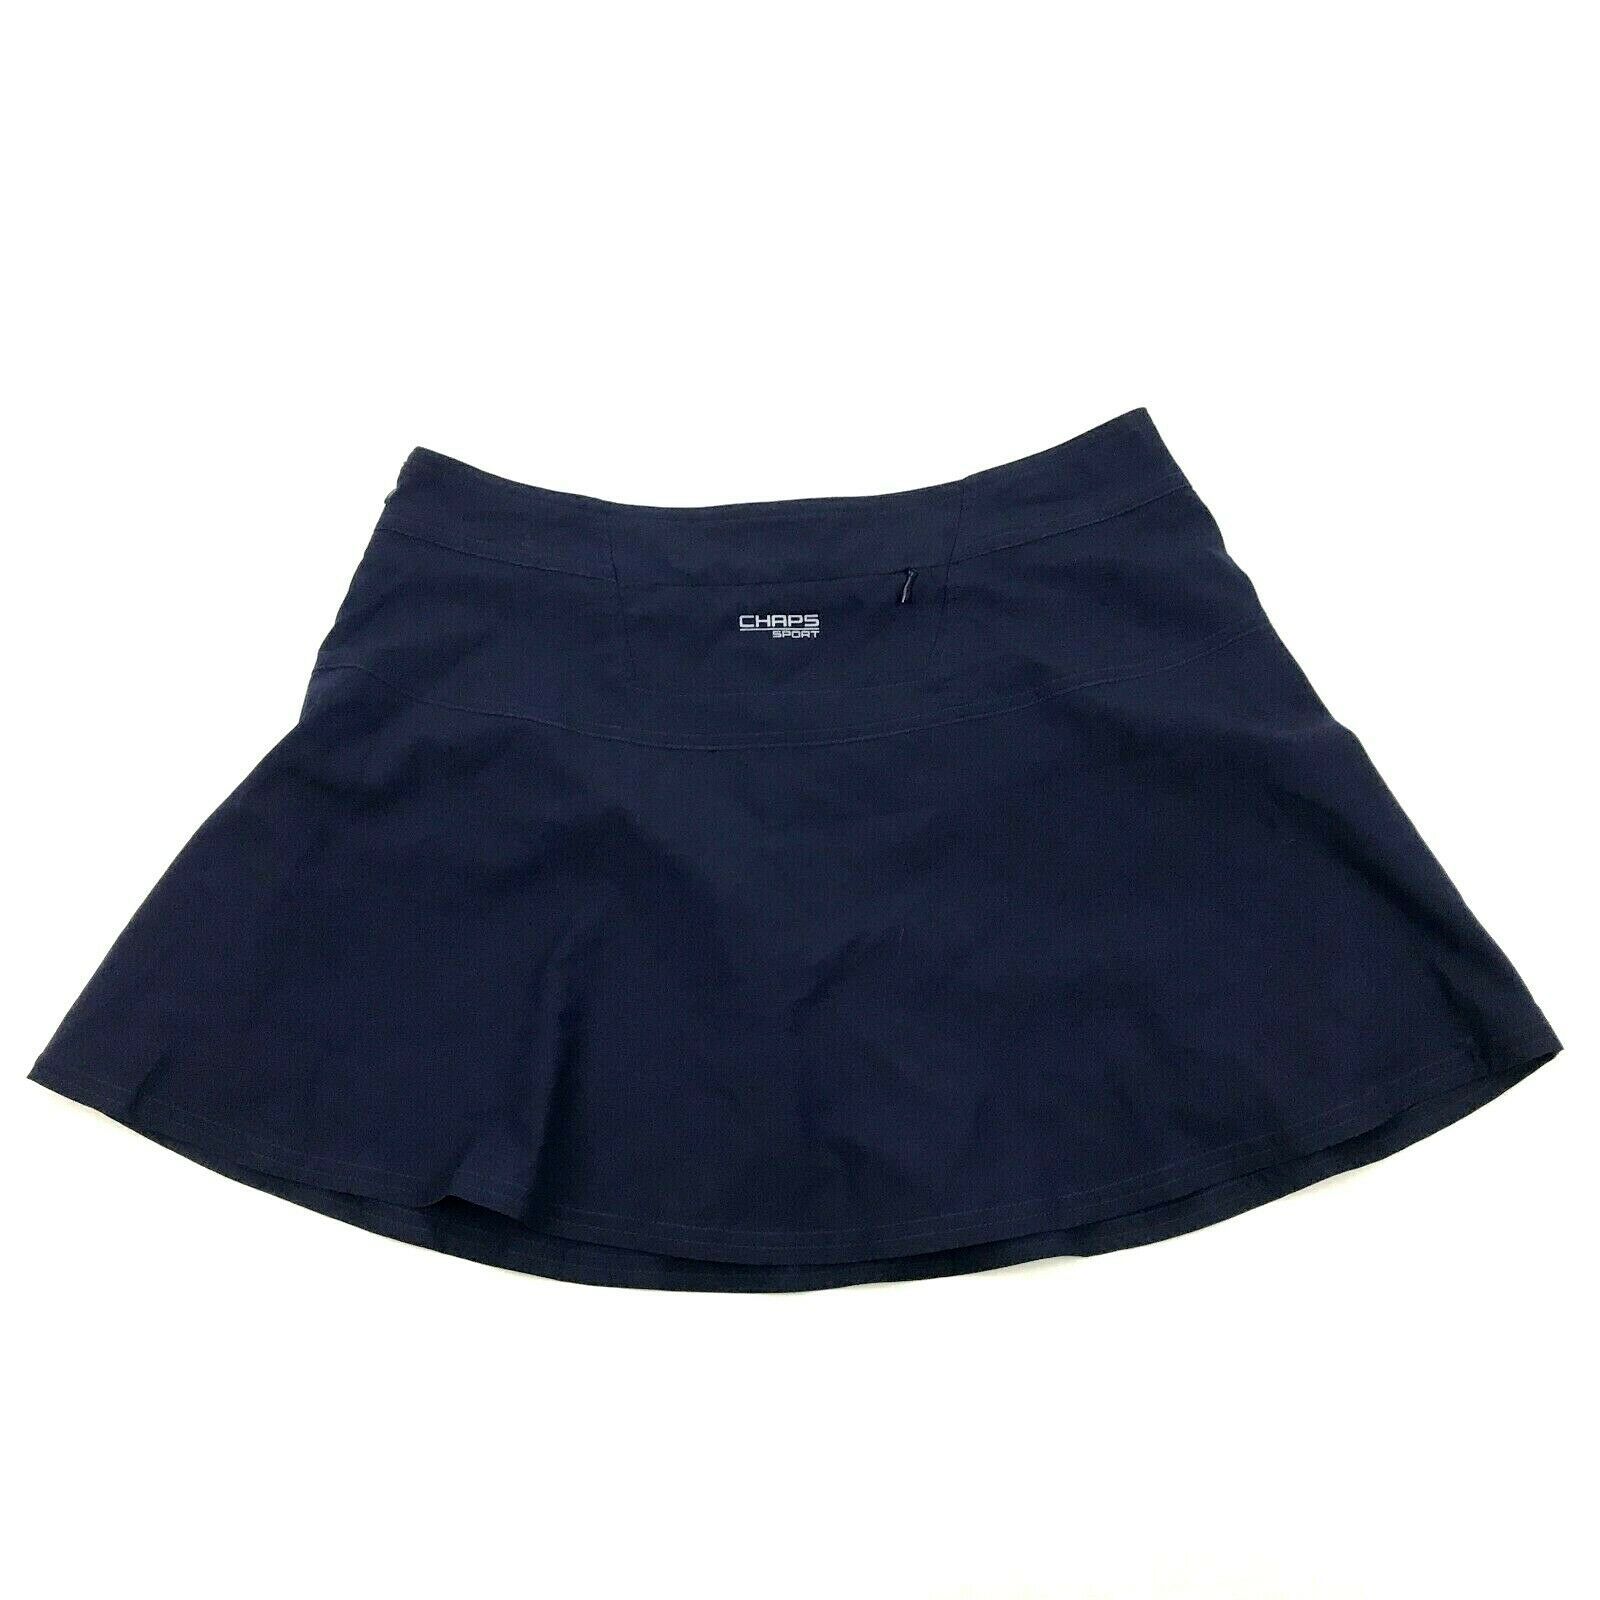 Chaps SPORT Womens Blue Skorts Golf Skirt Zip Up Short Lined Size 8 ...